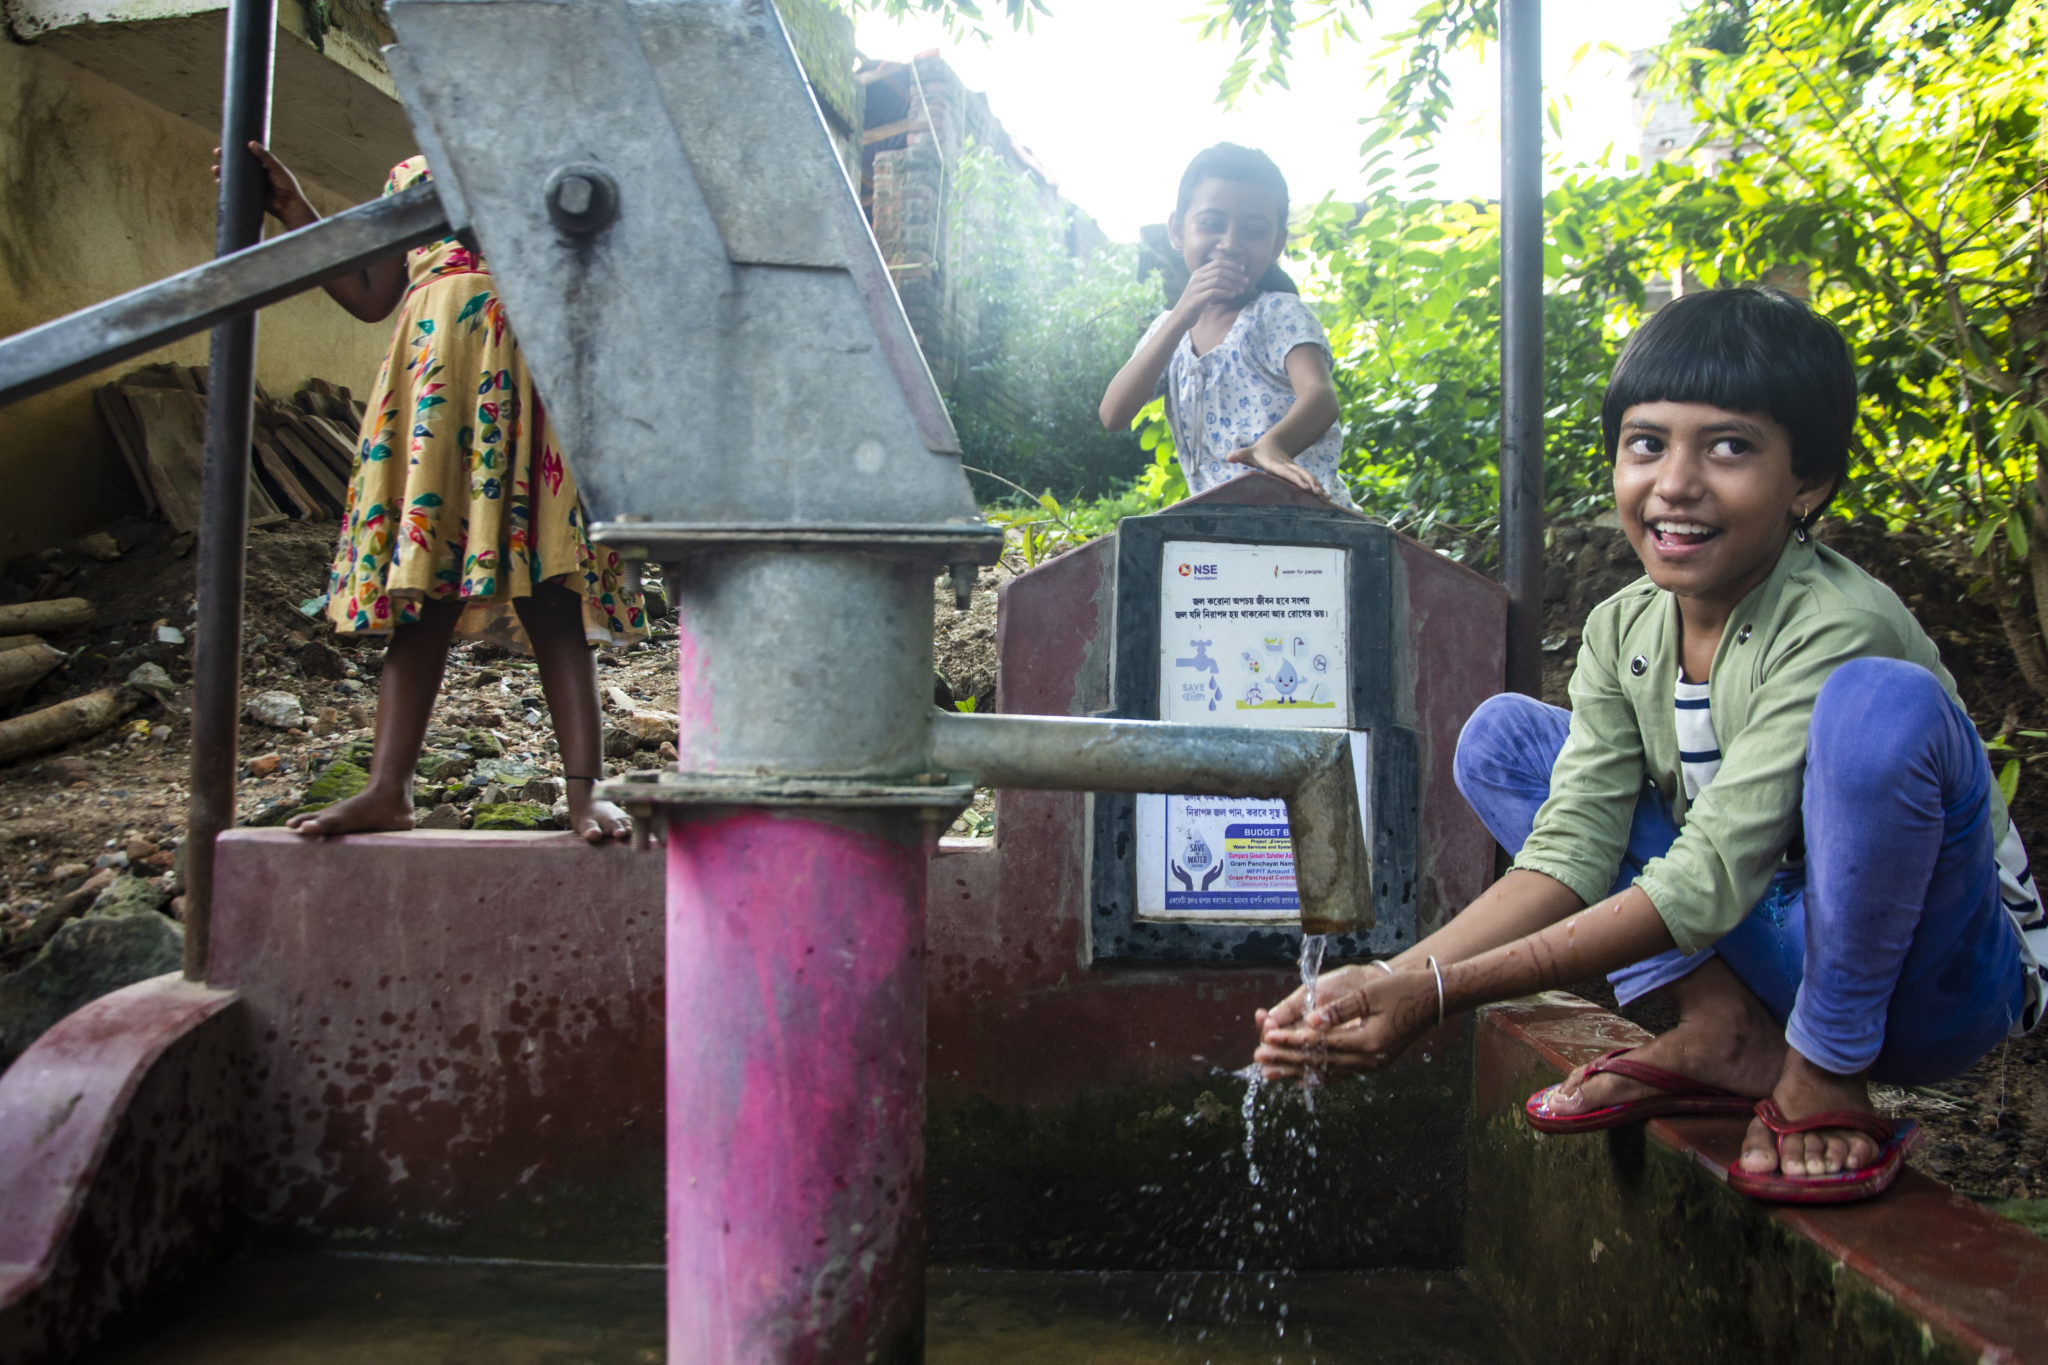 photograph of three children standing around a water pump